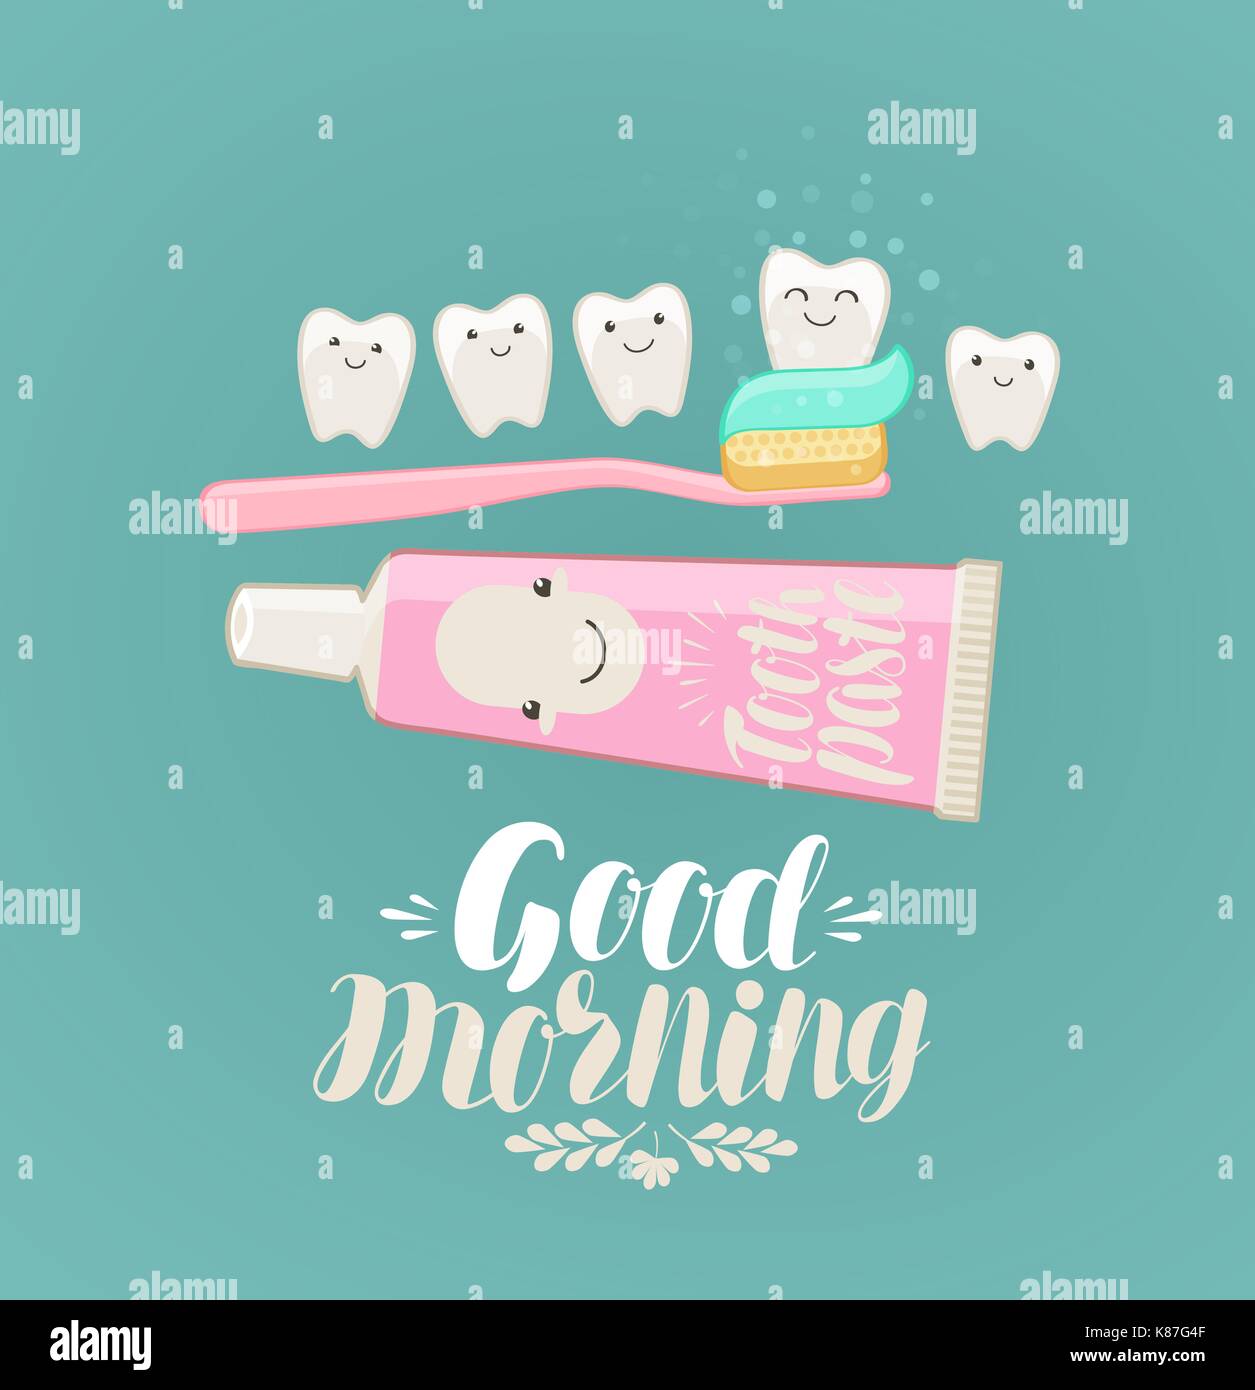 Guten Morgen Banner. Zähne putzen, Hygiene, Zahnpasta, Zahnbürste Konzept. Cartoon Vector Illustration Stock Vektor